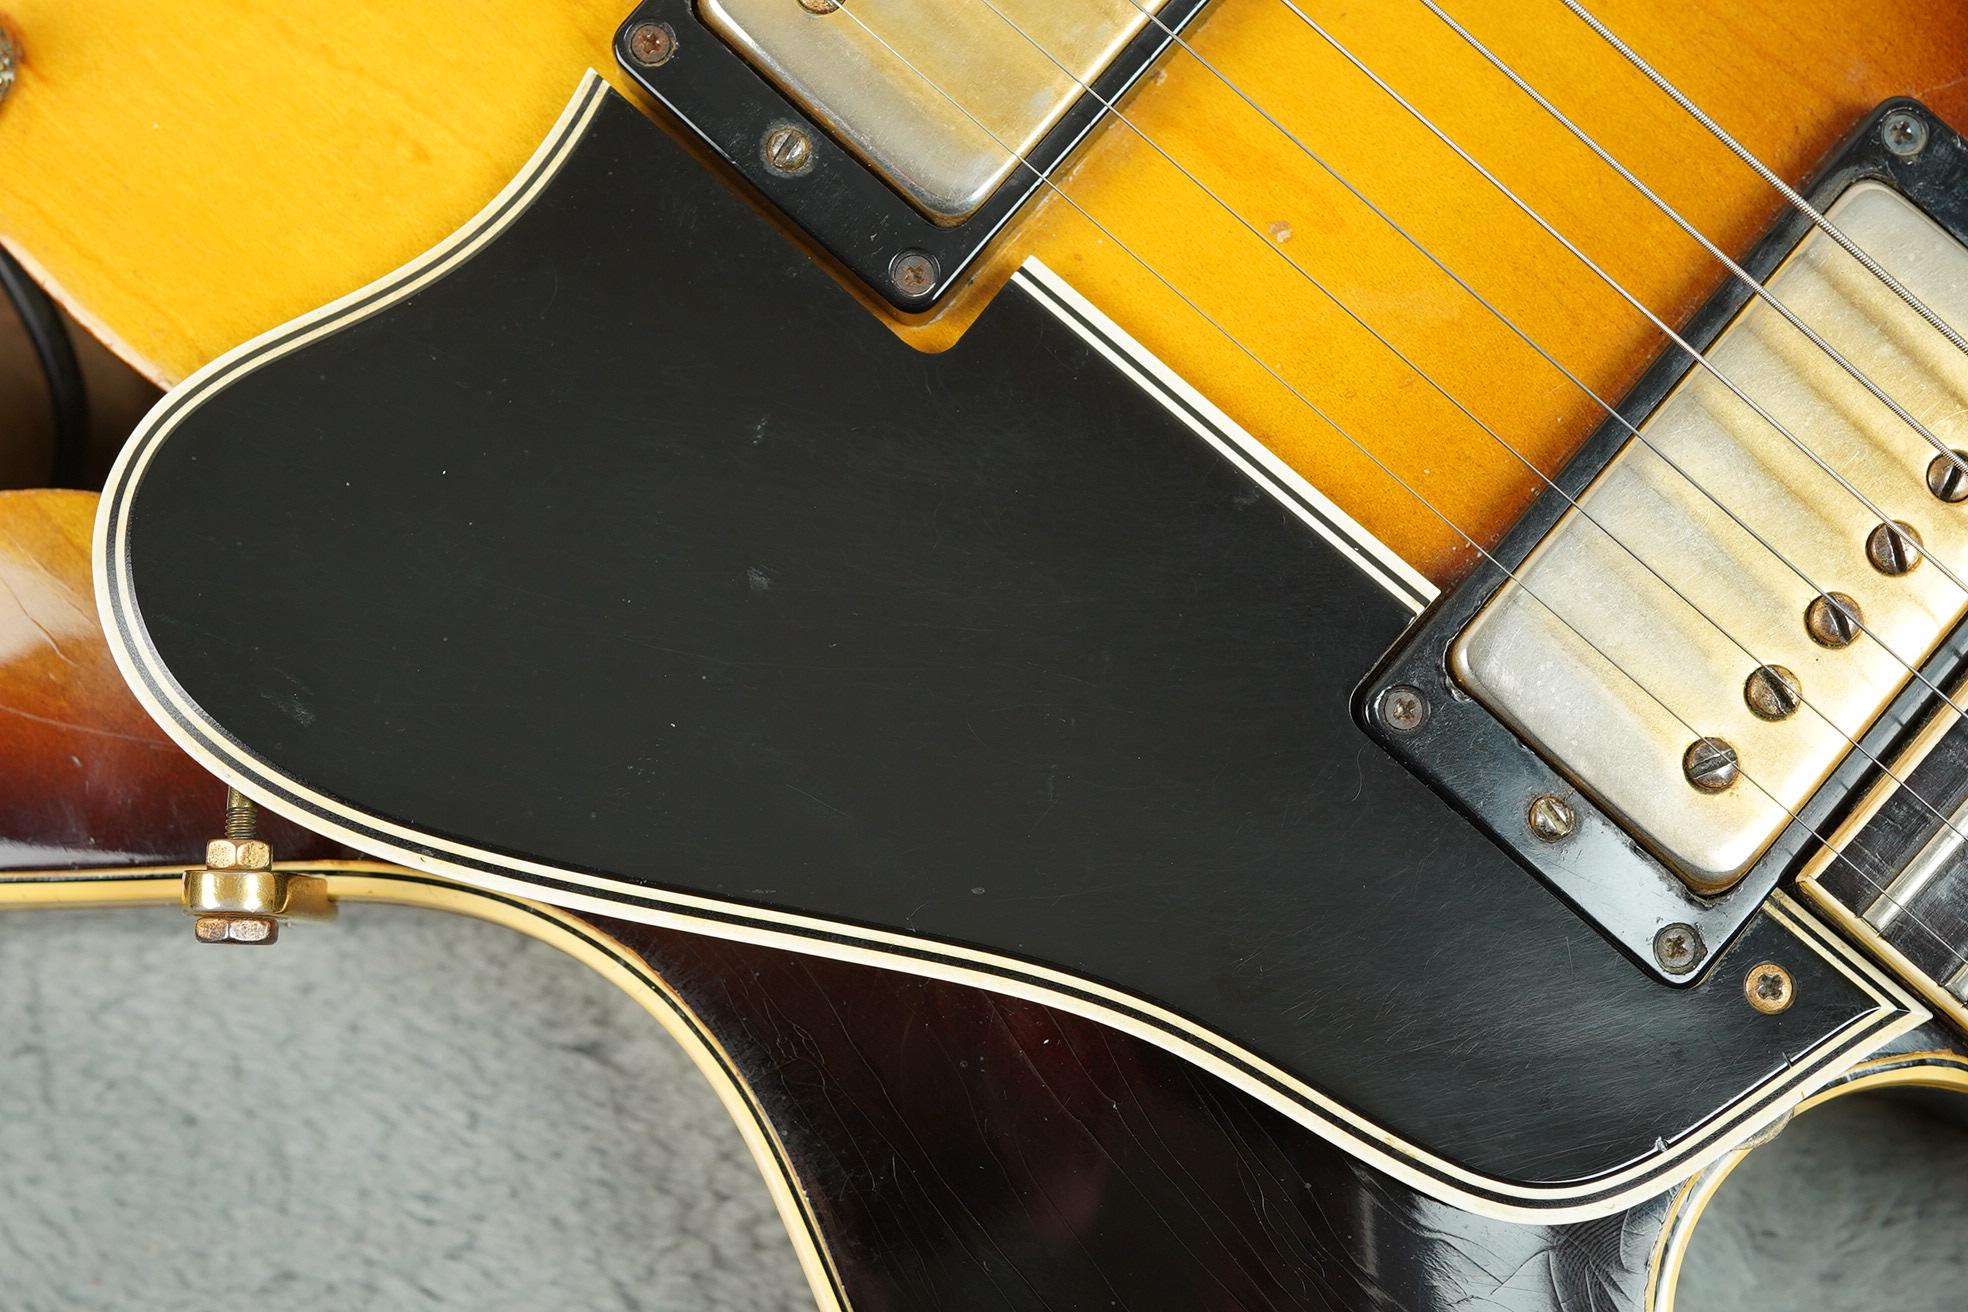 1965 Gibson ES-345 TD